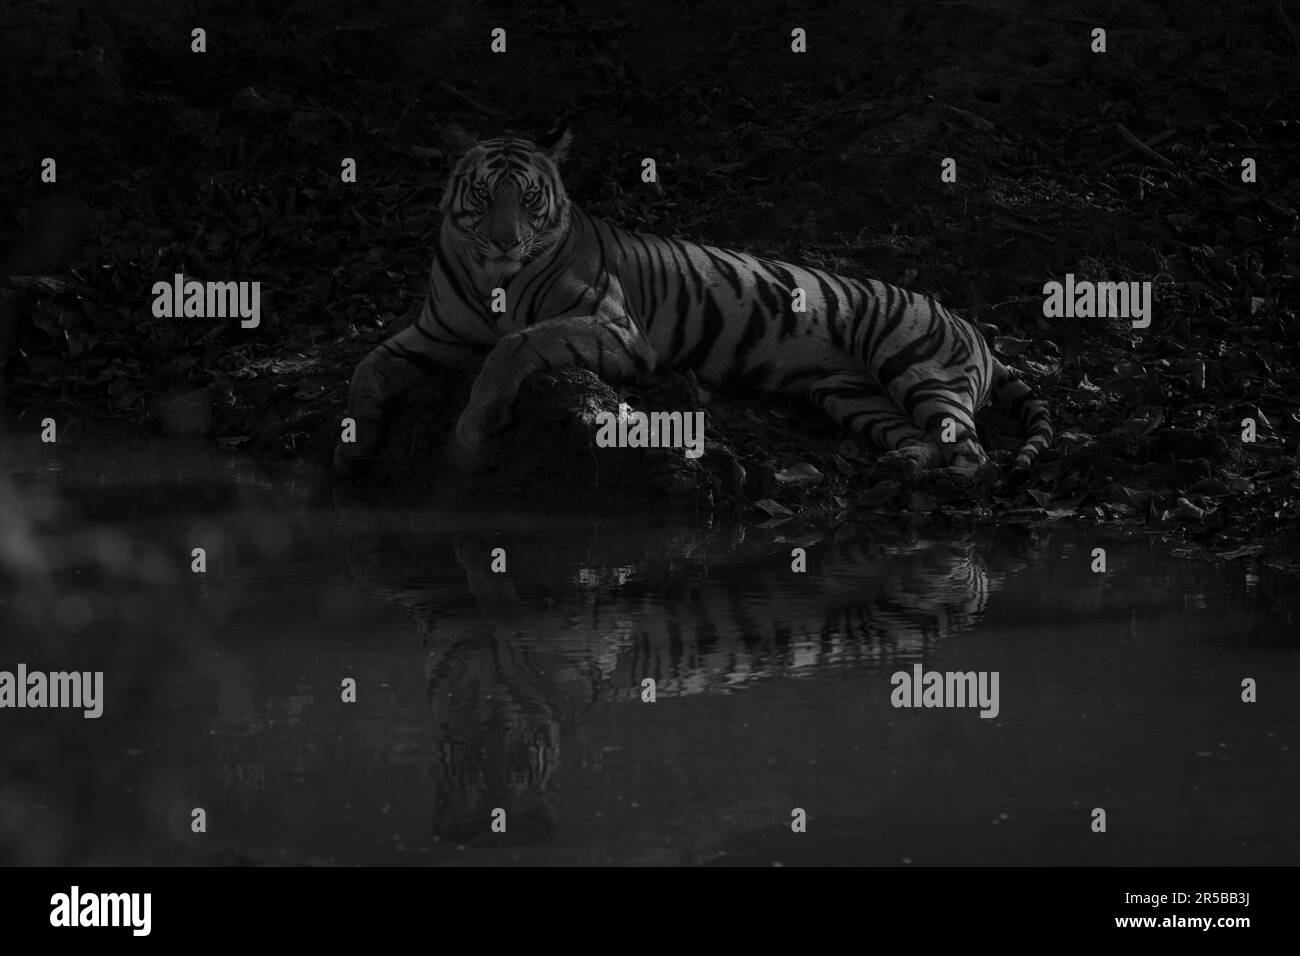 Un tigre macho de Bengala yace junto a un pozo de agua en la sombra, iluminado por el sol poniente. Tiene rayas naranjas y negras con manchas blancas en la cabeza y el pecho. S Foto de stock